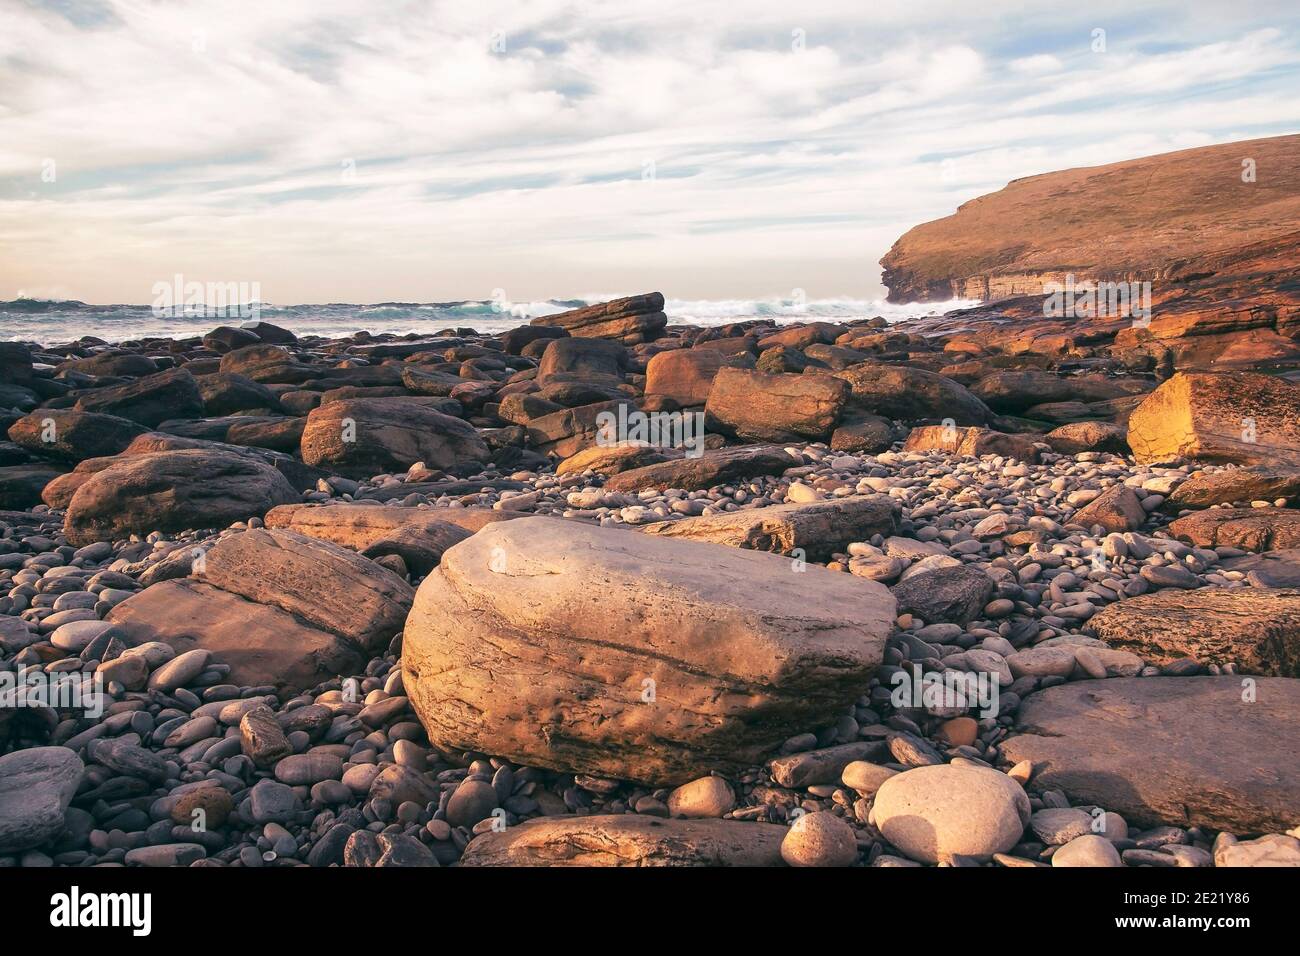 Grands rochers sur la plage avec l'océan Atlantique en arrière-plan Sur la rive des îles Orcades, dans le nord de l'Écosse Banque D'Images